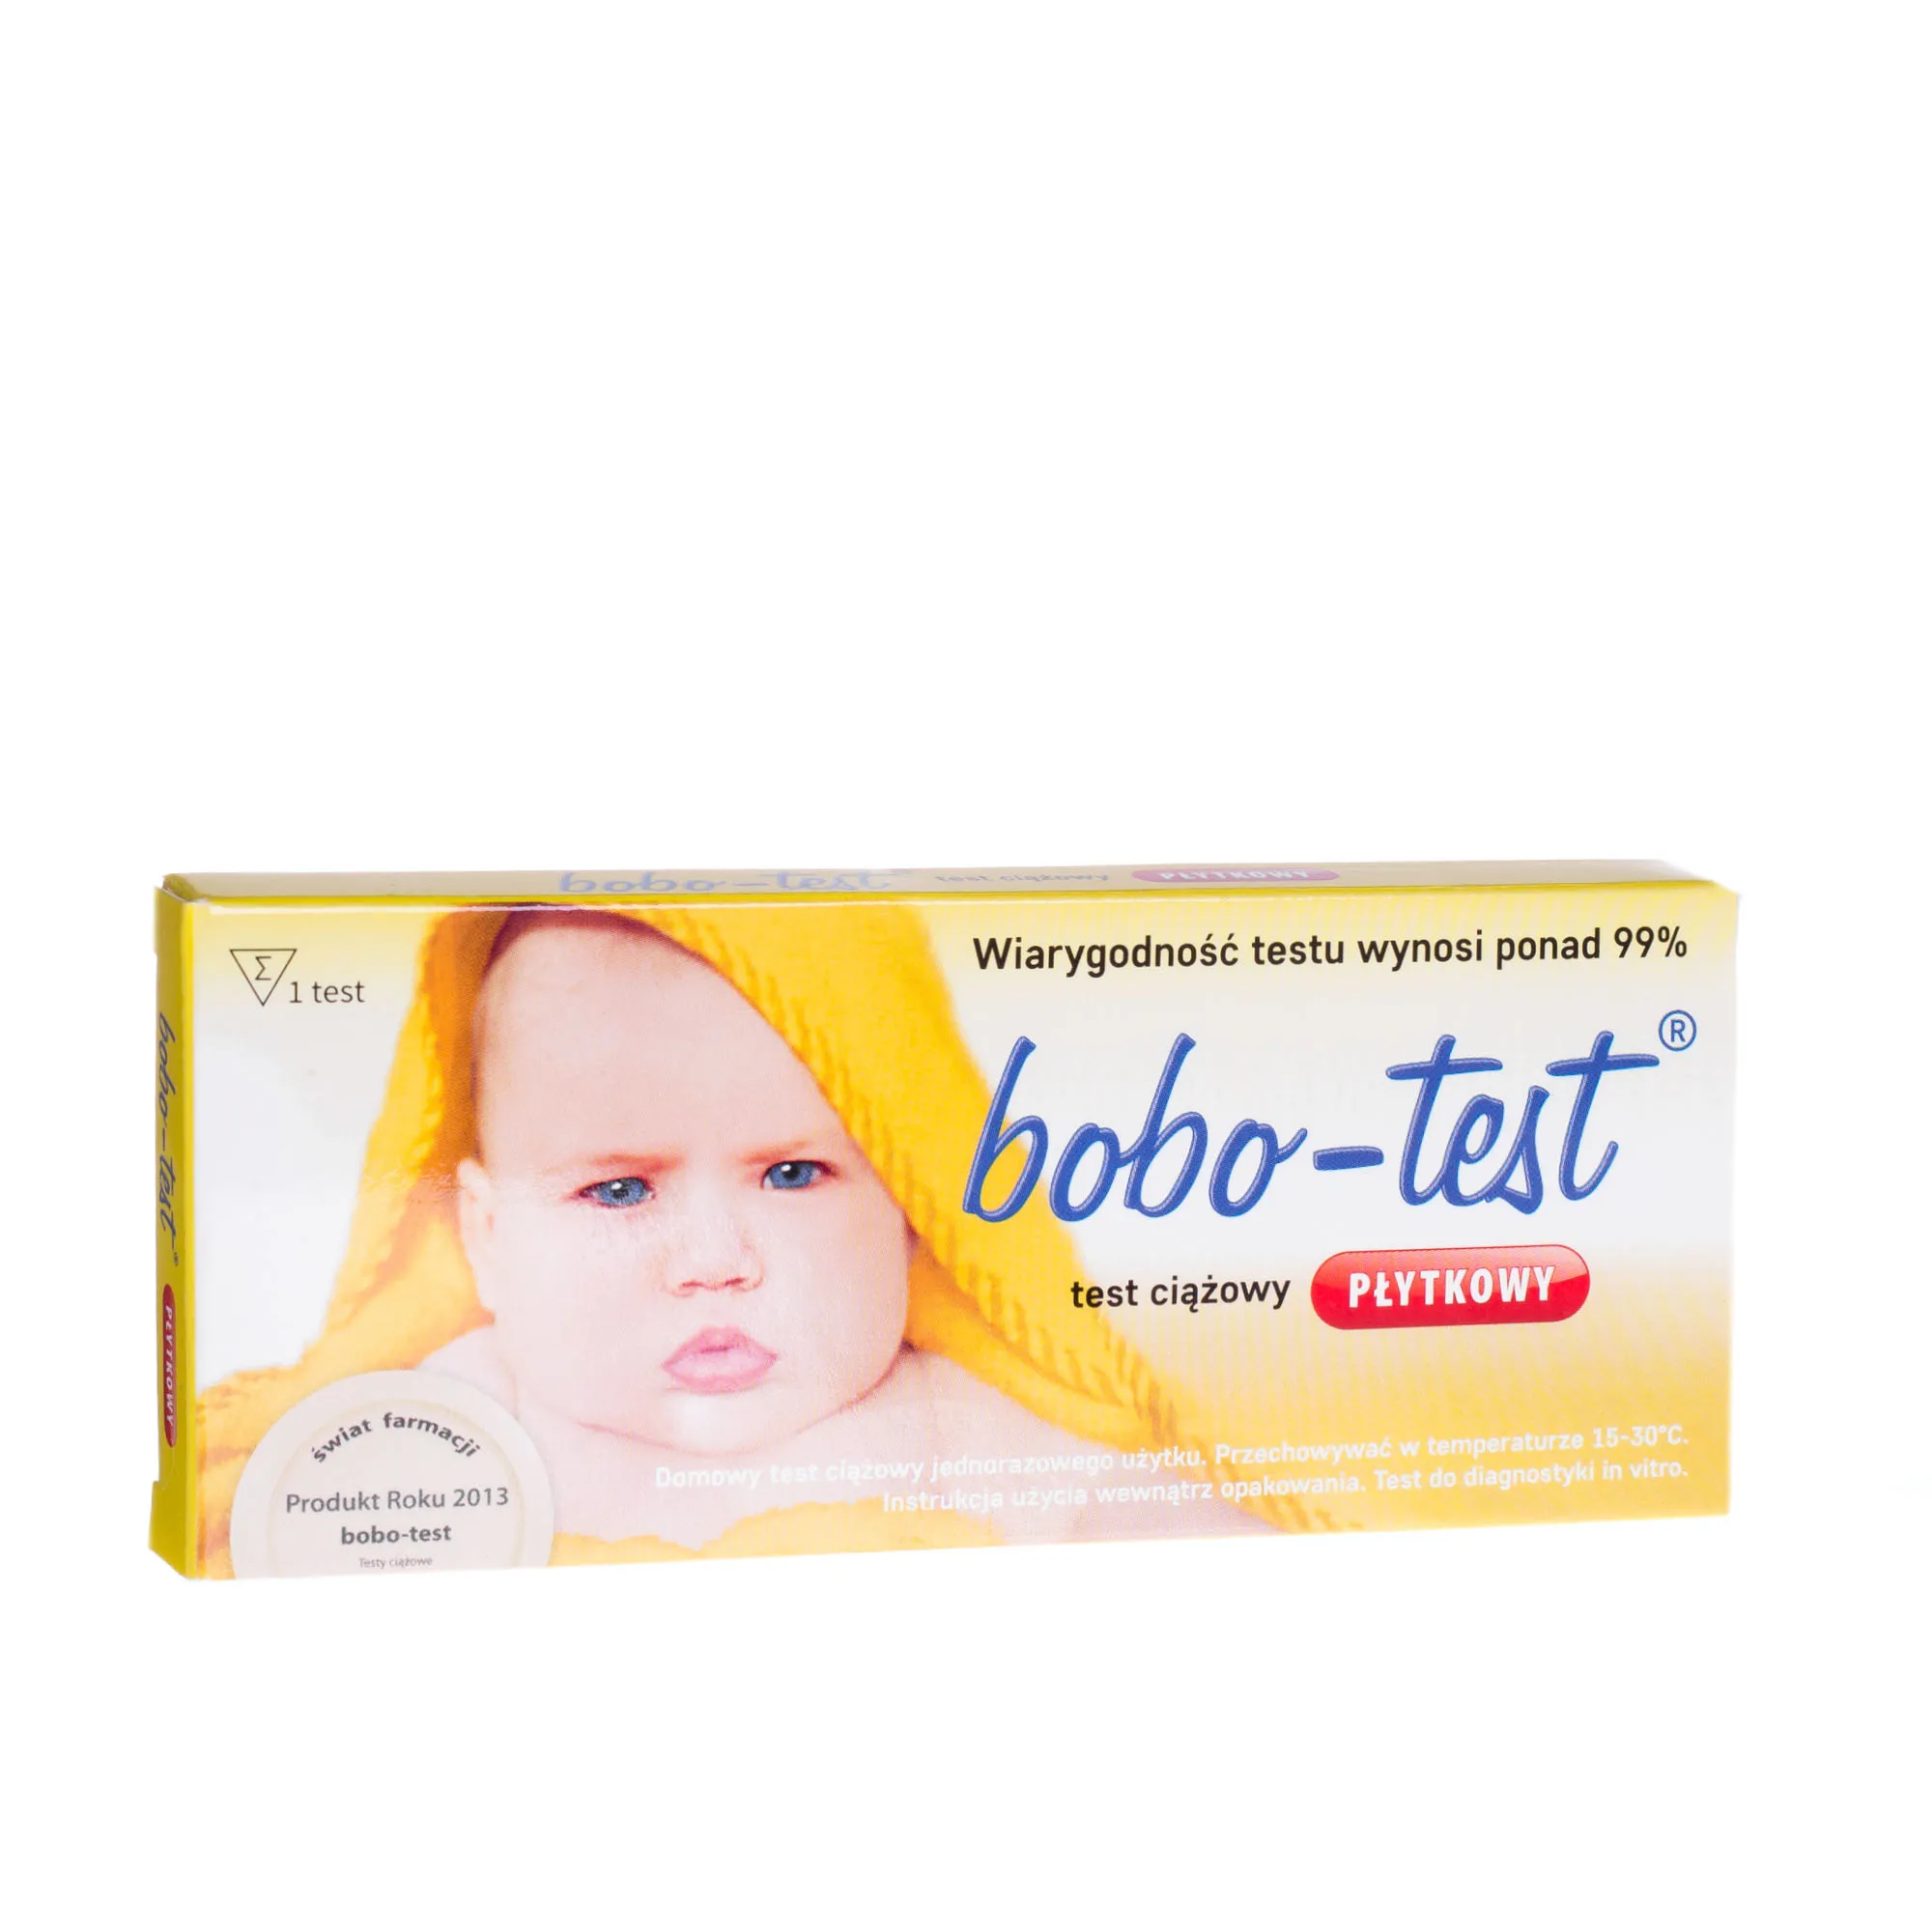 Bobo-test test ciążowy płytkowy, 1 szt. 